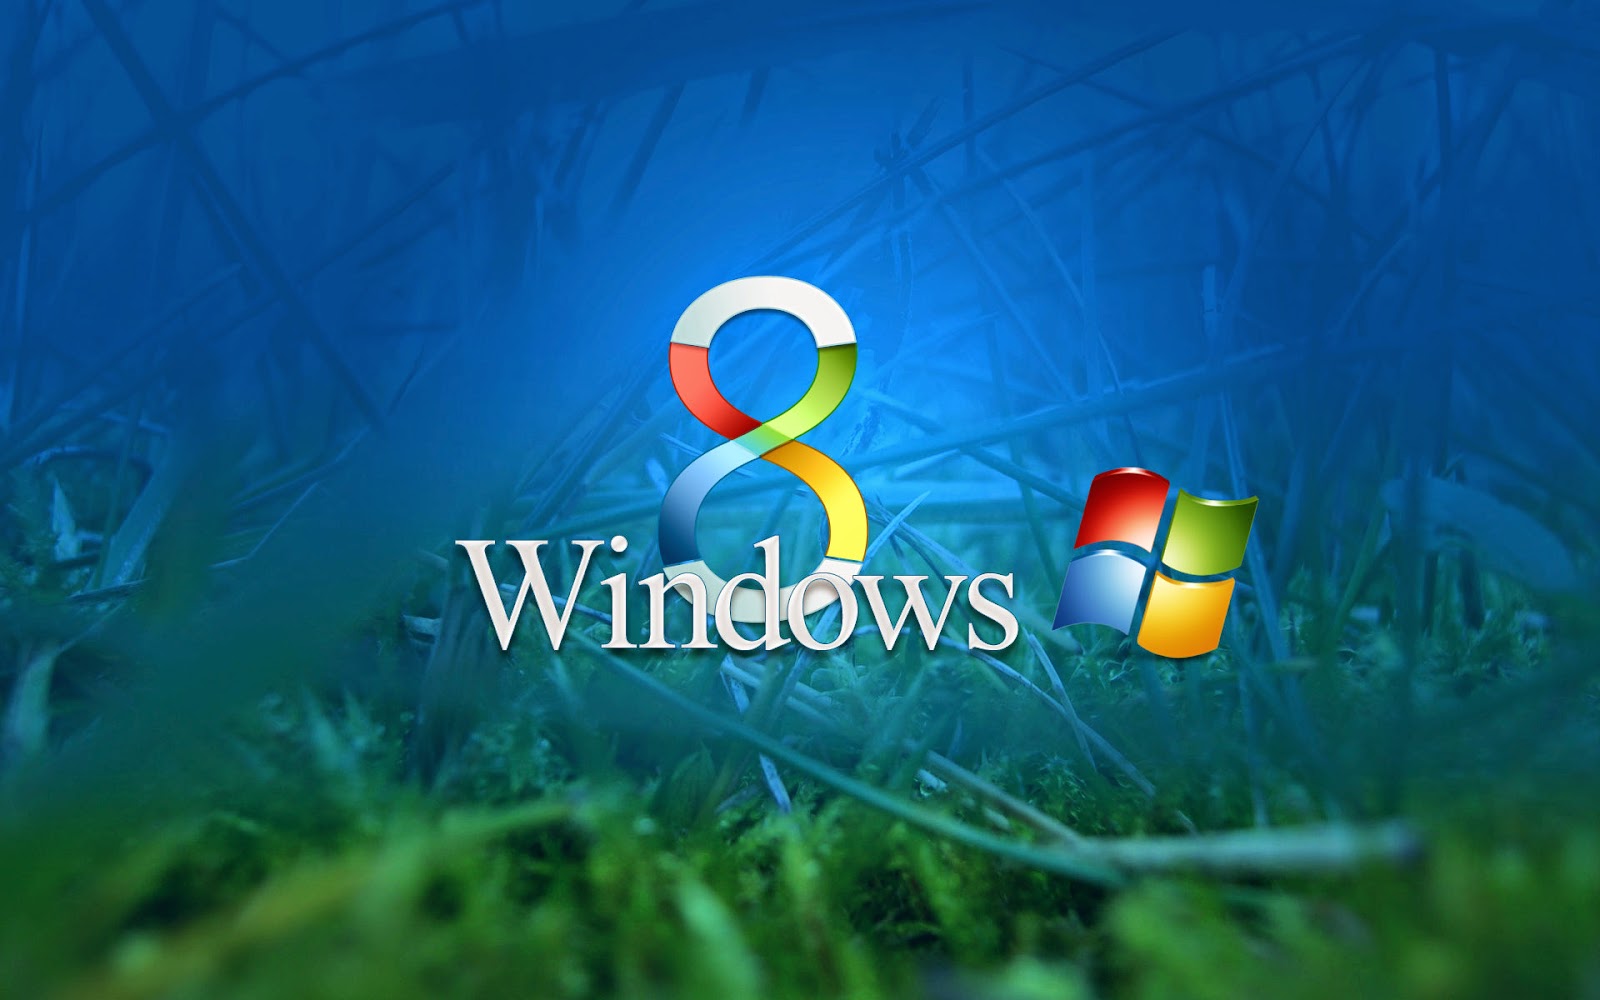 Bạn muốn thay đổi hình nền máy tính của bạn với Windows 8? Dễ dàng điều chỉnh được nhiều chủ đề và tùy chỉnh hình ảnh để nó phù hợp với phong cách của bạn.